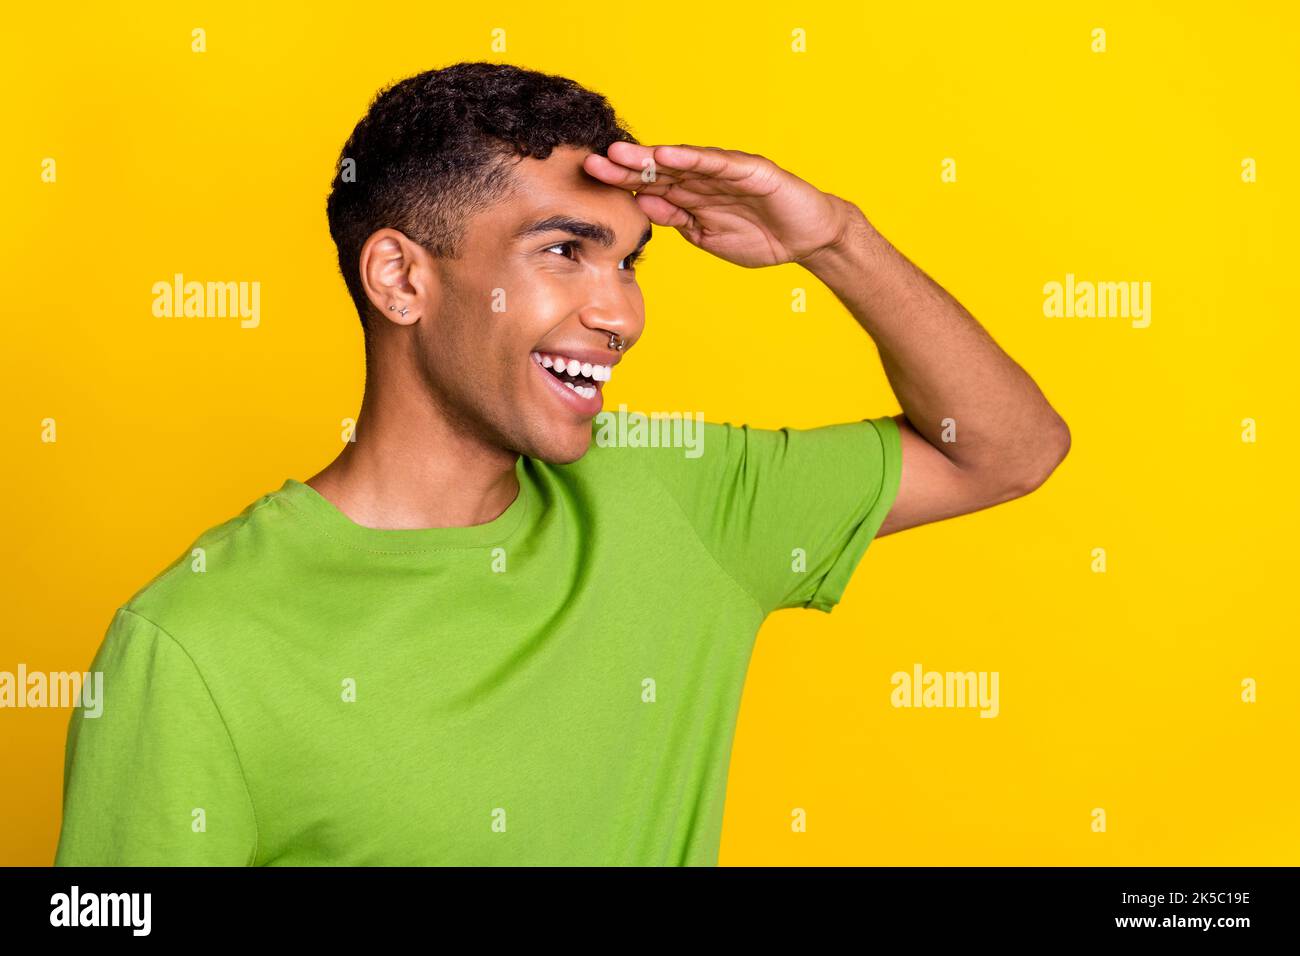 Profil photo de jeune sourire positif beau gars gai regardant loin de nouvelles aventures amis isolés sur fond jaune couleur Banque D'Images